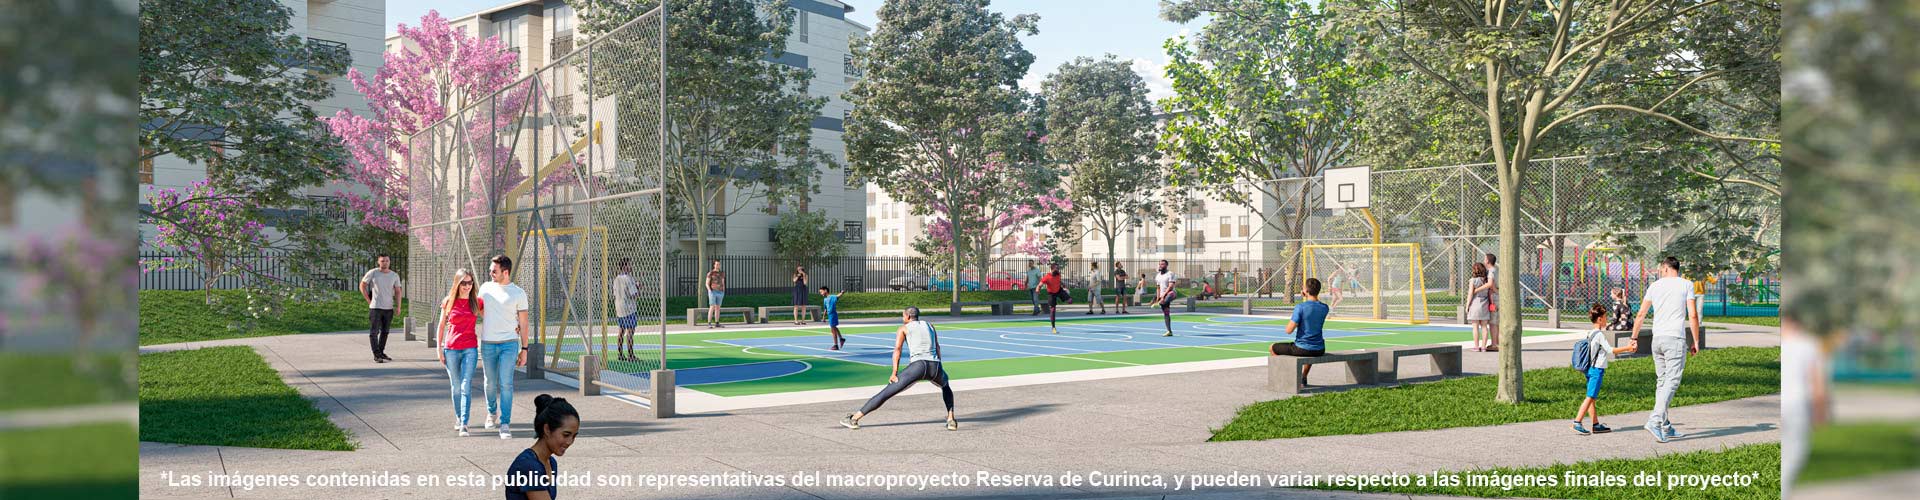 proyecto de apartamentos en santa marta con subsidio de vivienda, constructora bolivar